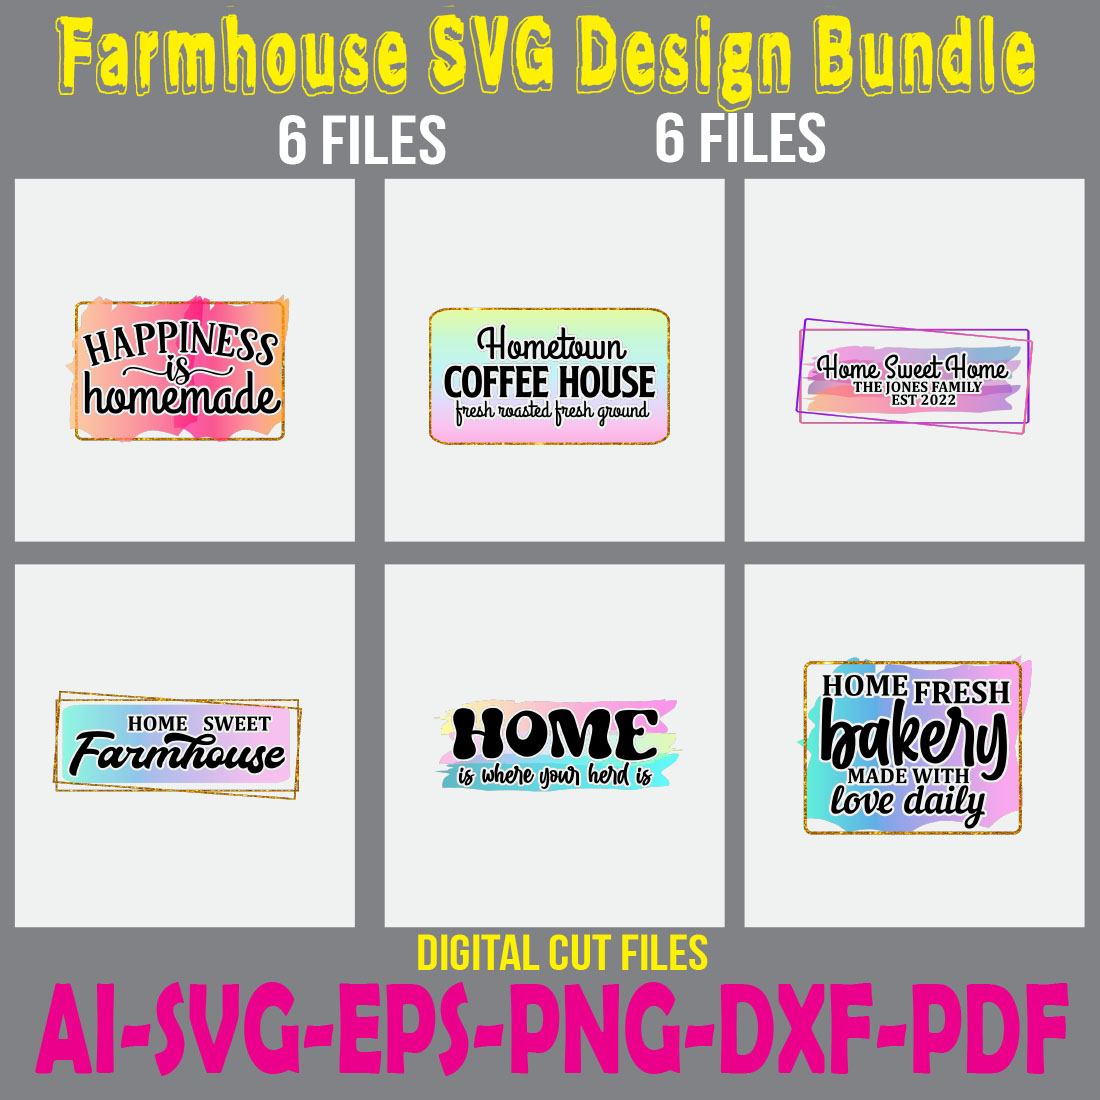 Farmhouse SVG Design Bundle cover image.